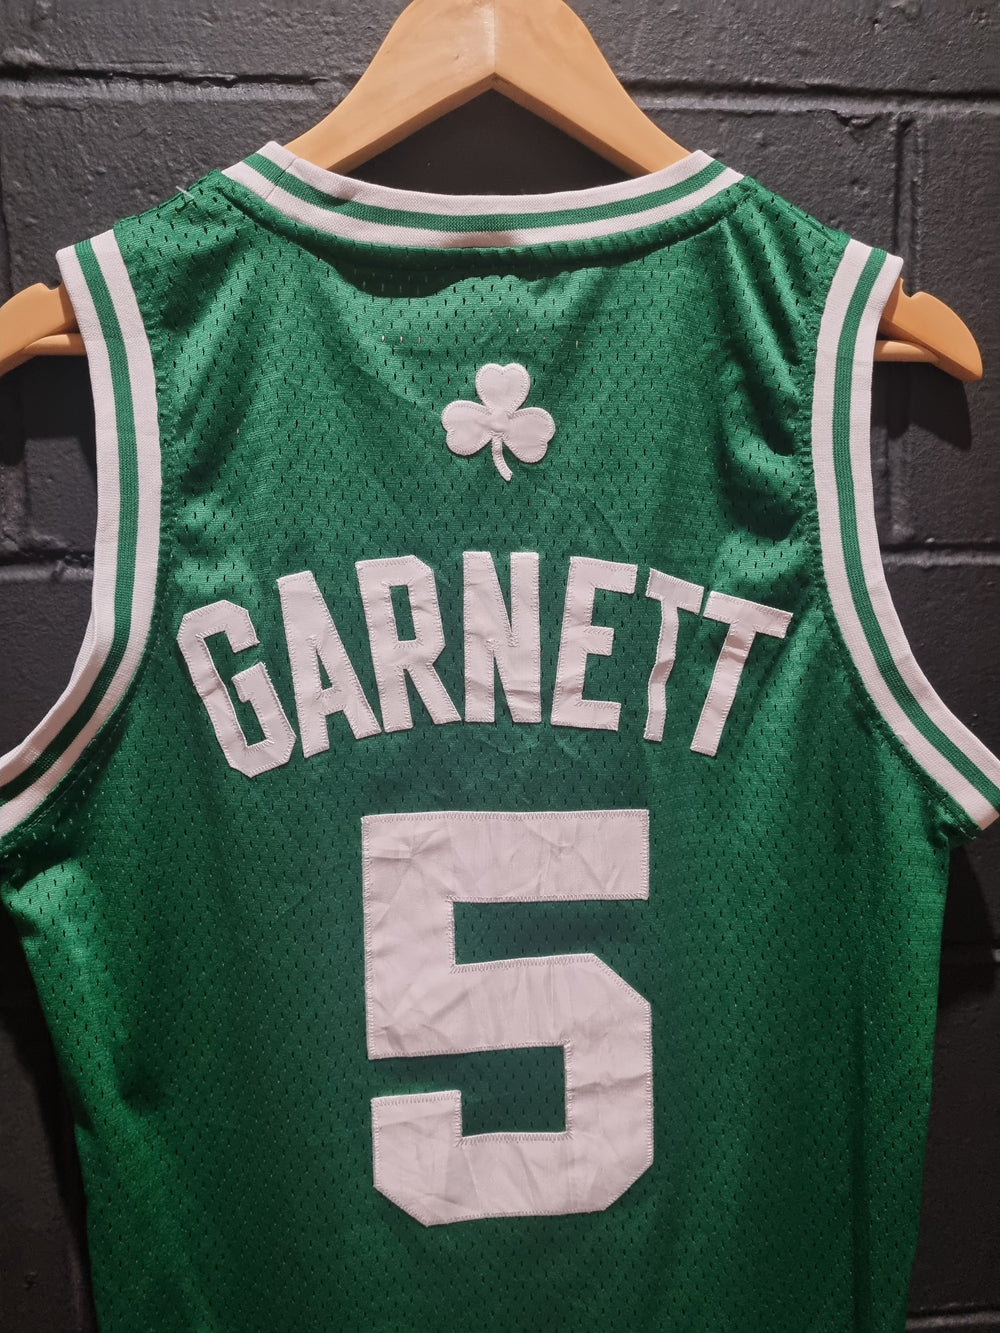 Boston Celtics Garnett Adidas Small